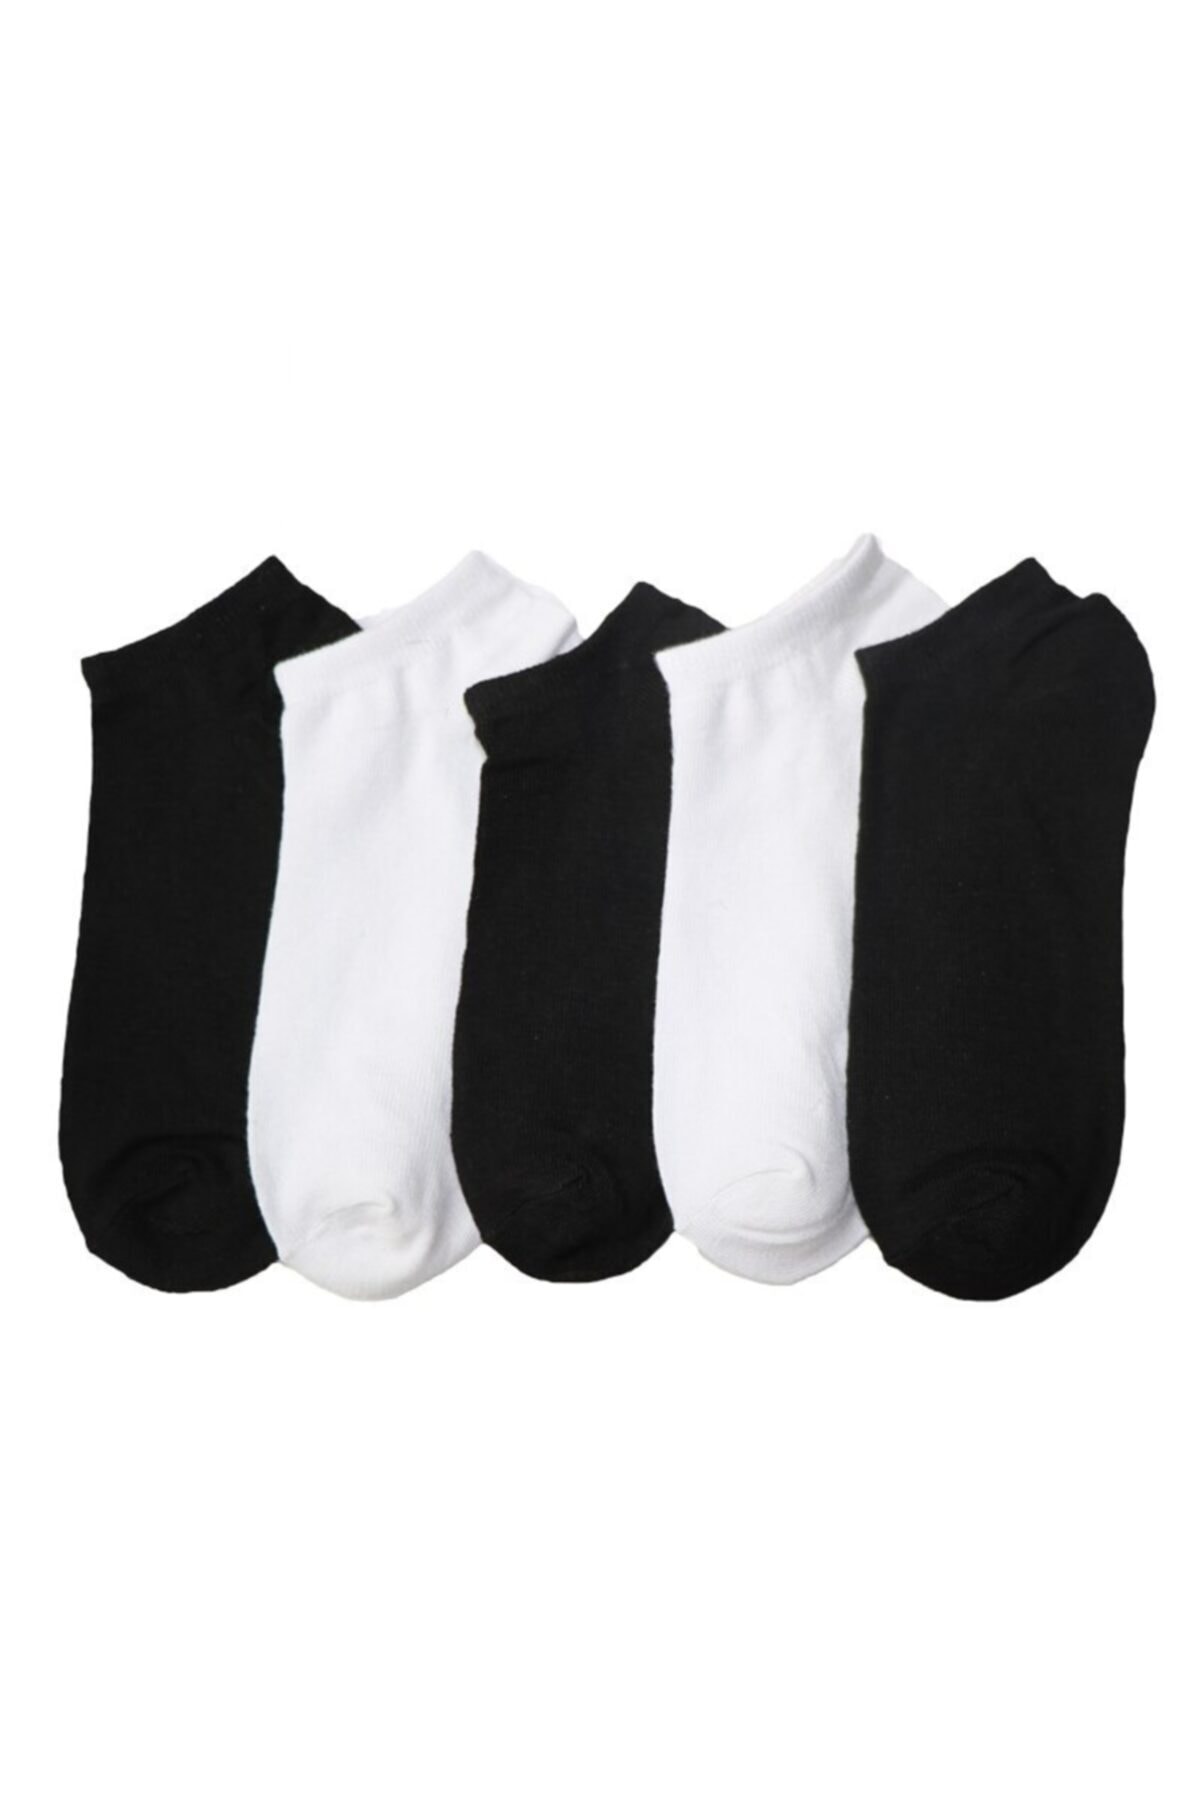 çorapmanya 5 Çift Kadın Koton Siyah-beyaz Patik Çorap